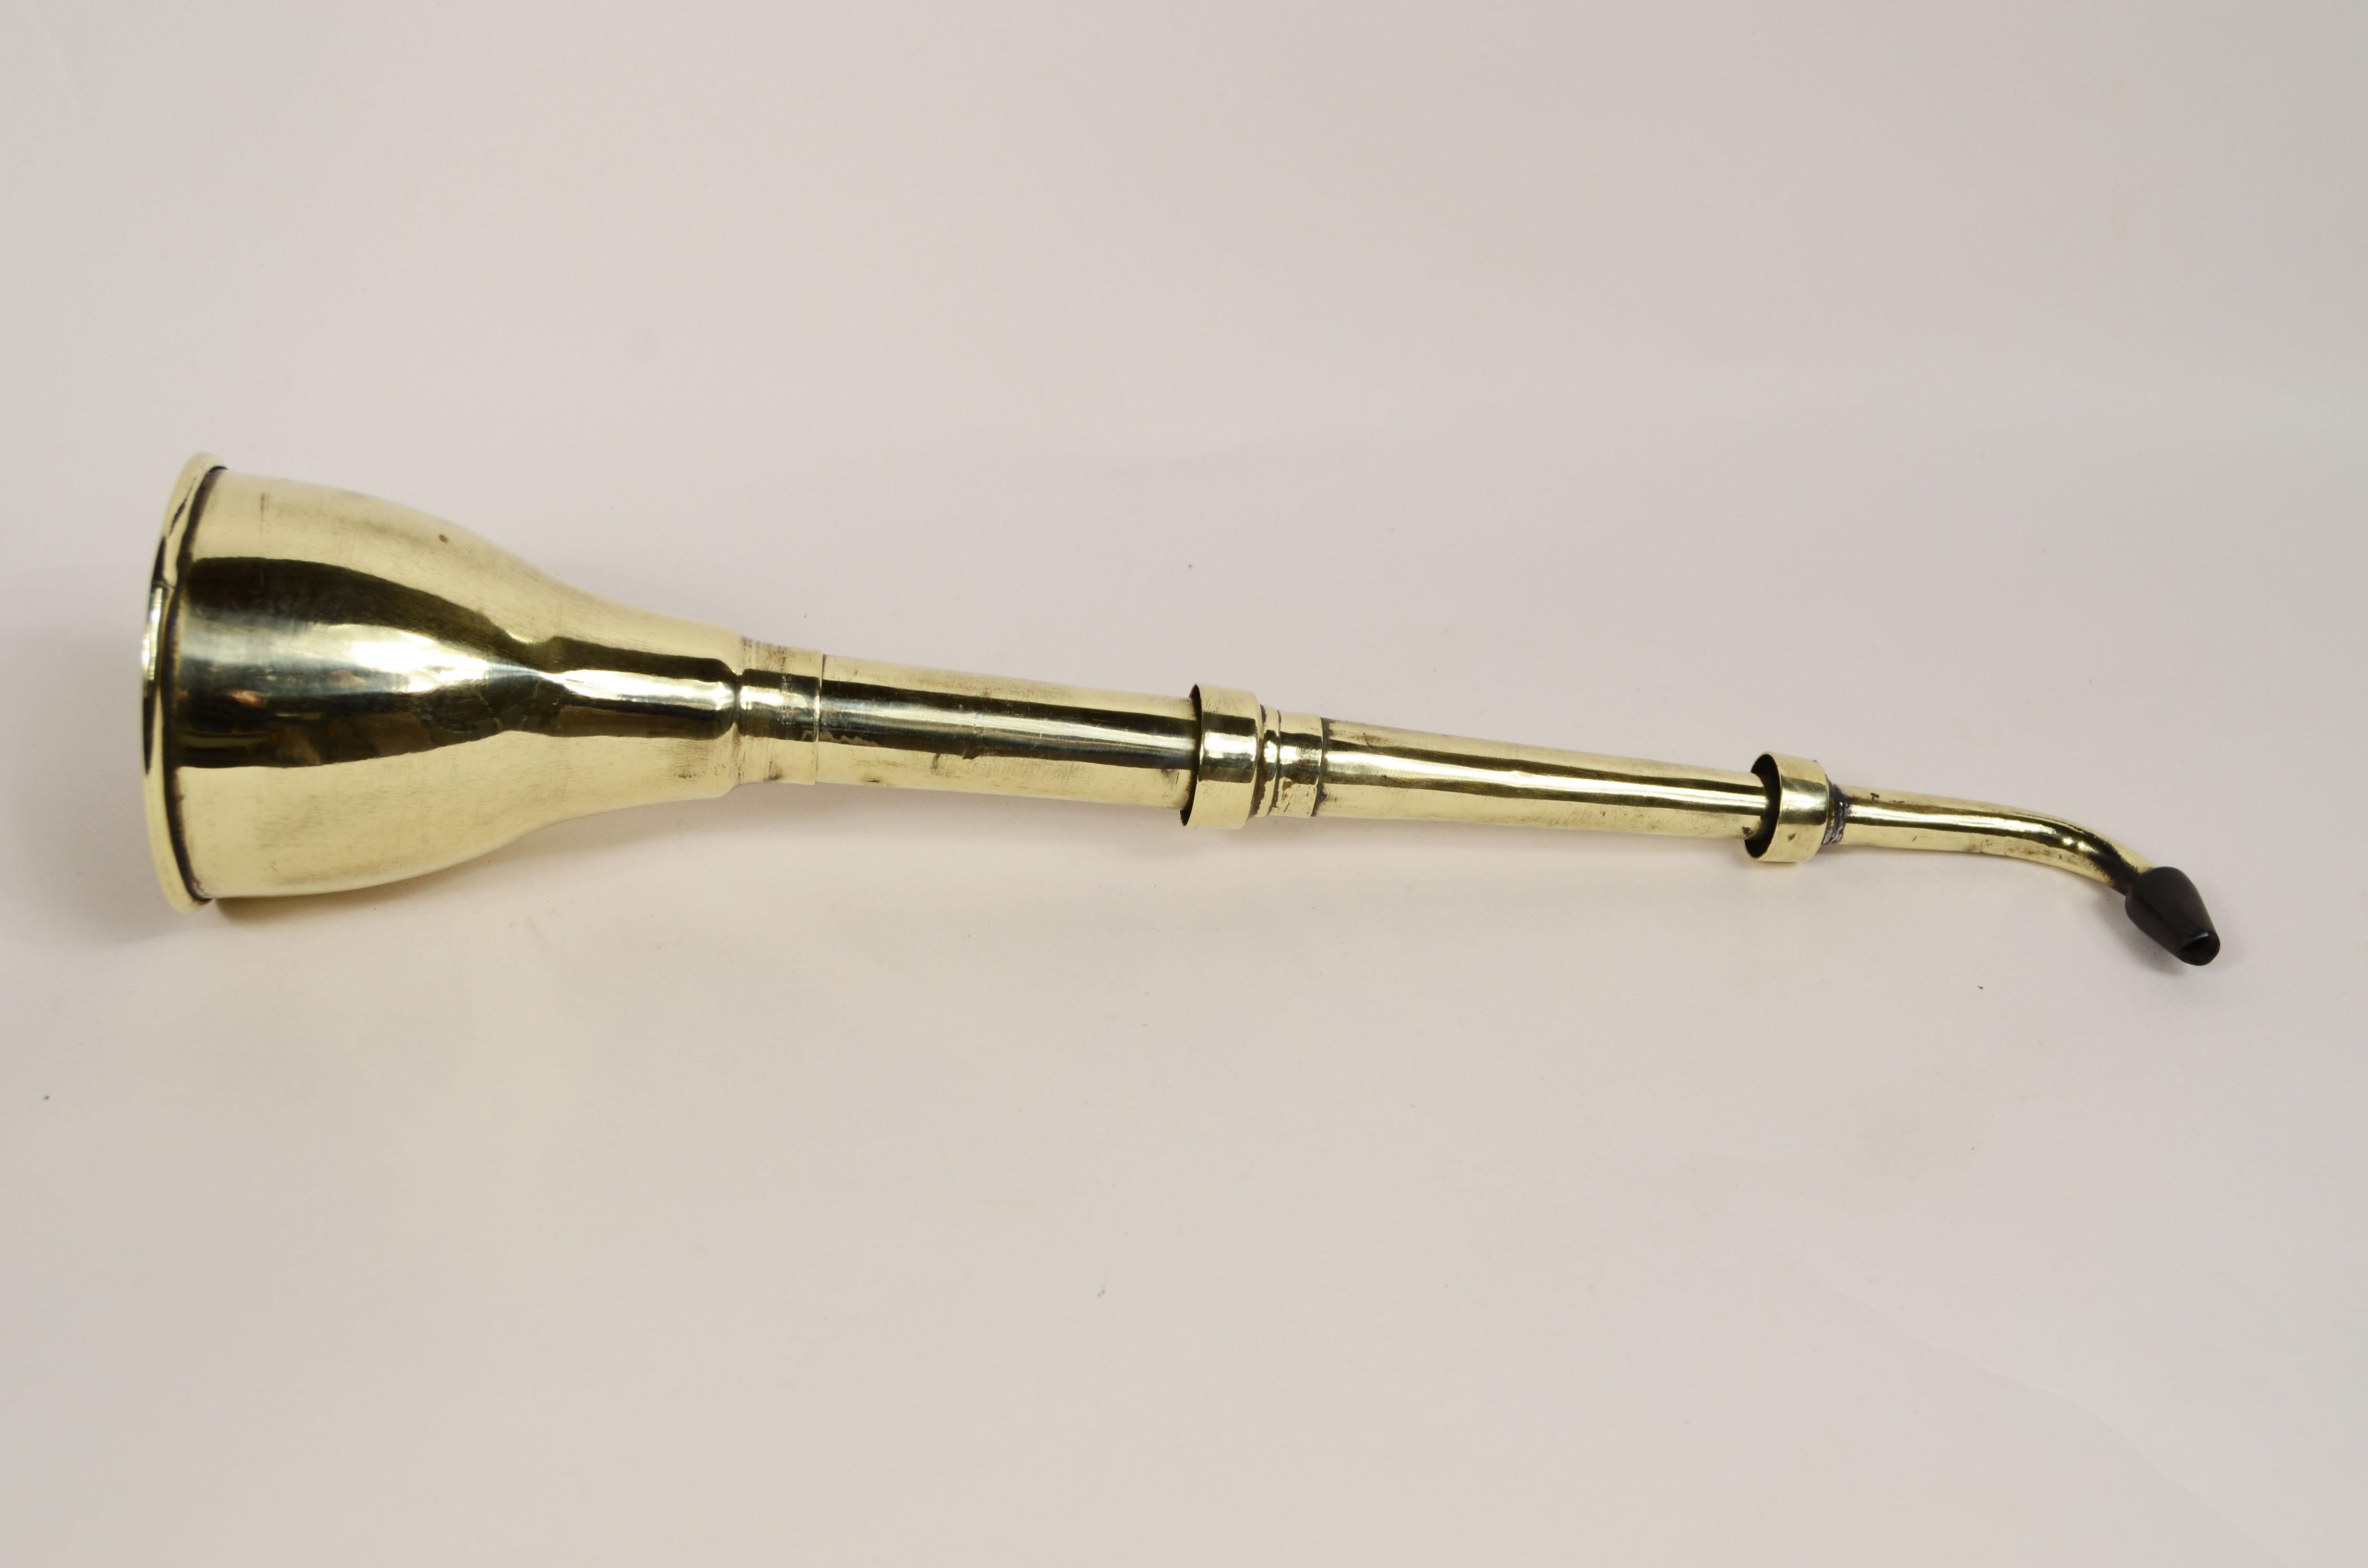 Teleskopisches akustisches Kornett aus Messing und Bakelit, englische Herstellung aus den frühen 1900er Jahren.
Das Funktionsprinzip beruht auf der Reflexion des Schalls an den Innenwänden, so dass mehr Energie aus der Ausbreitung der Schallwellen